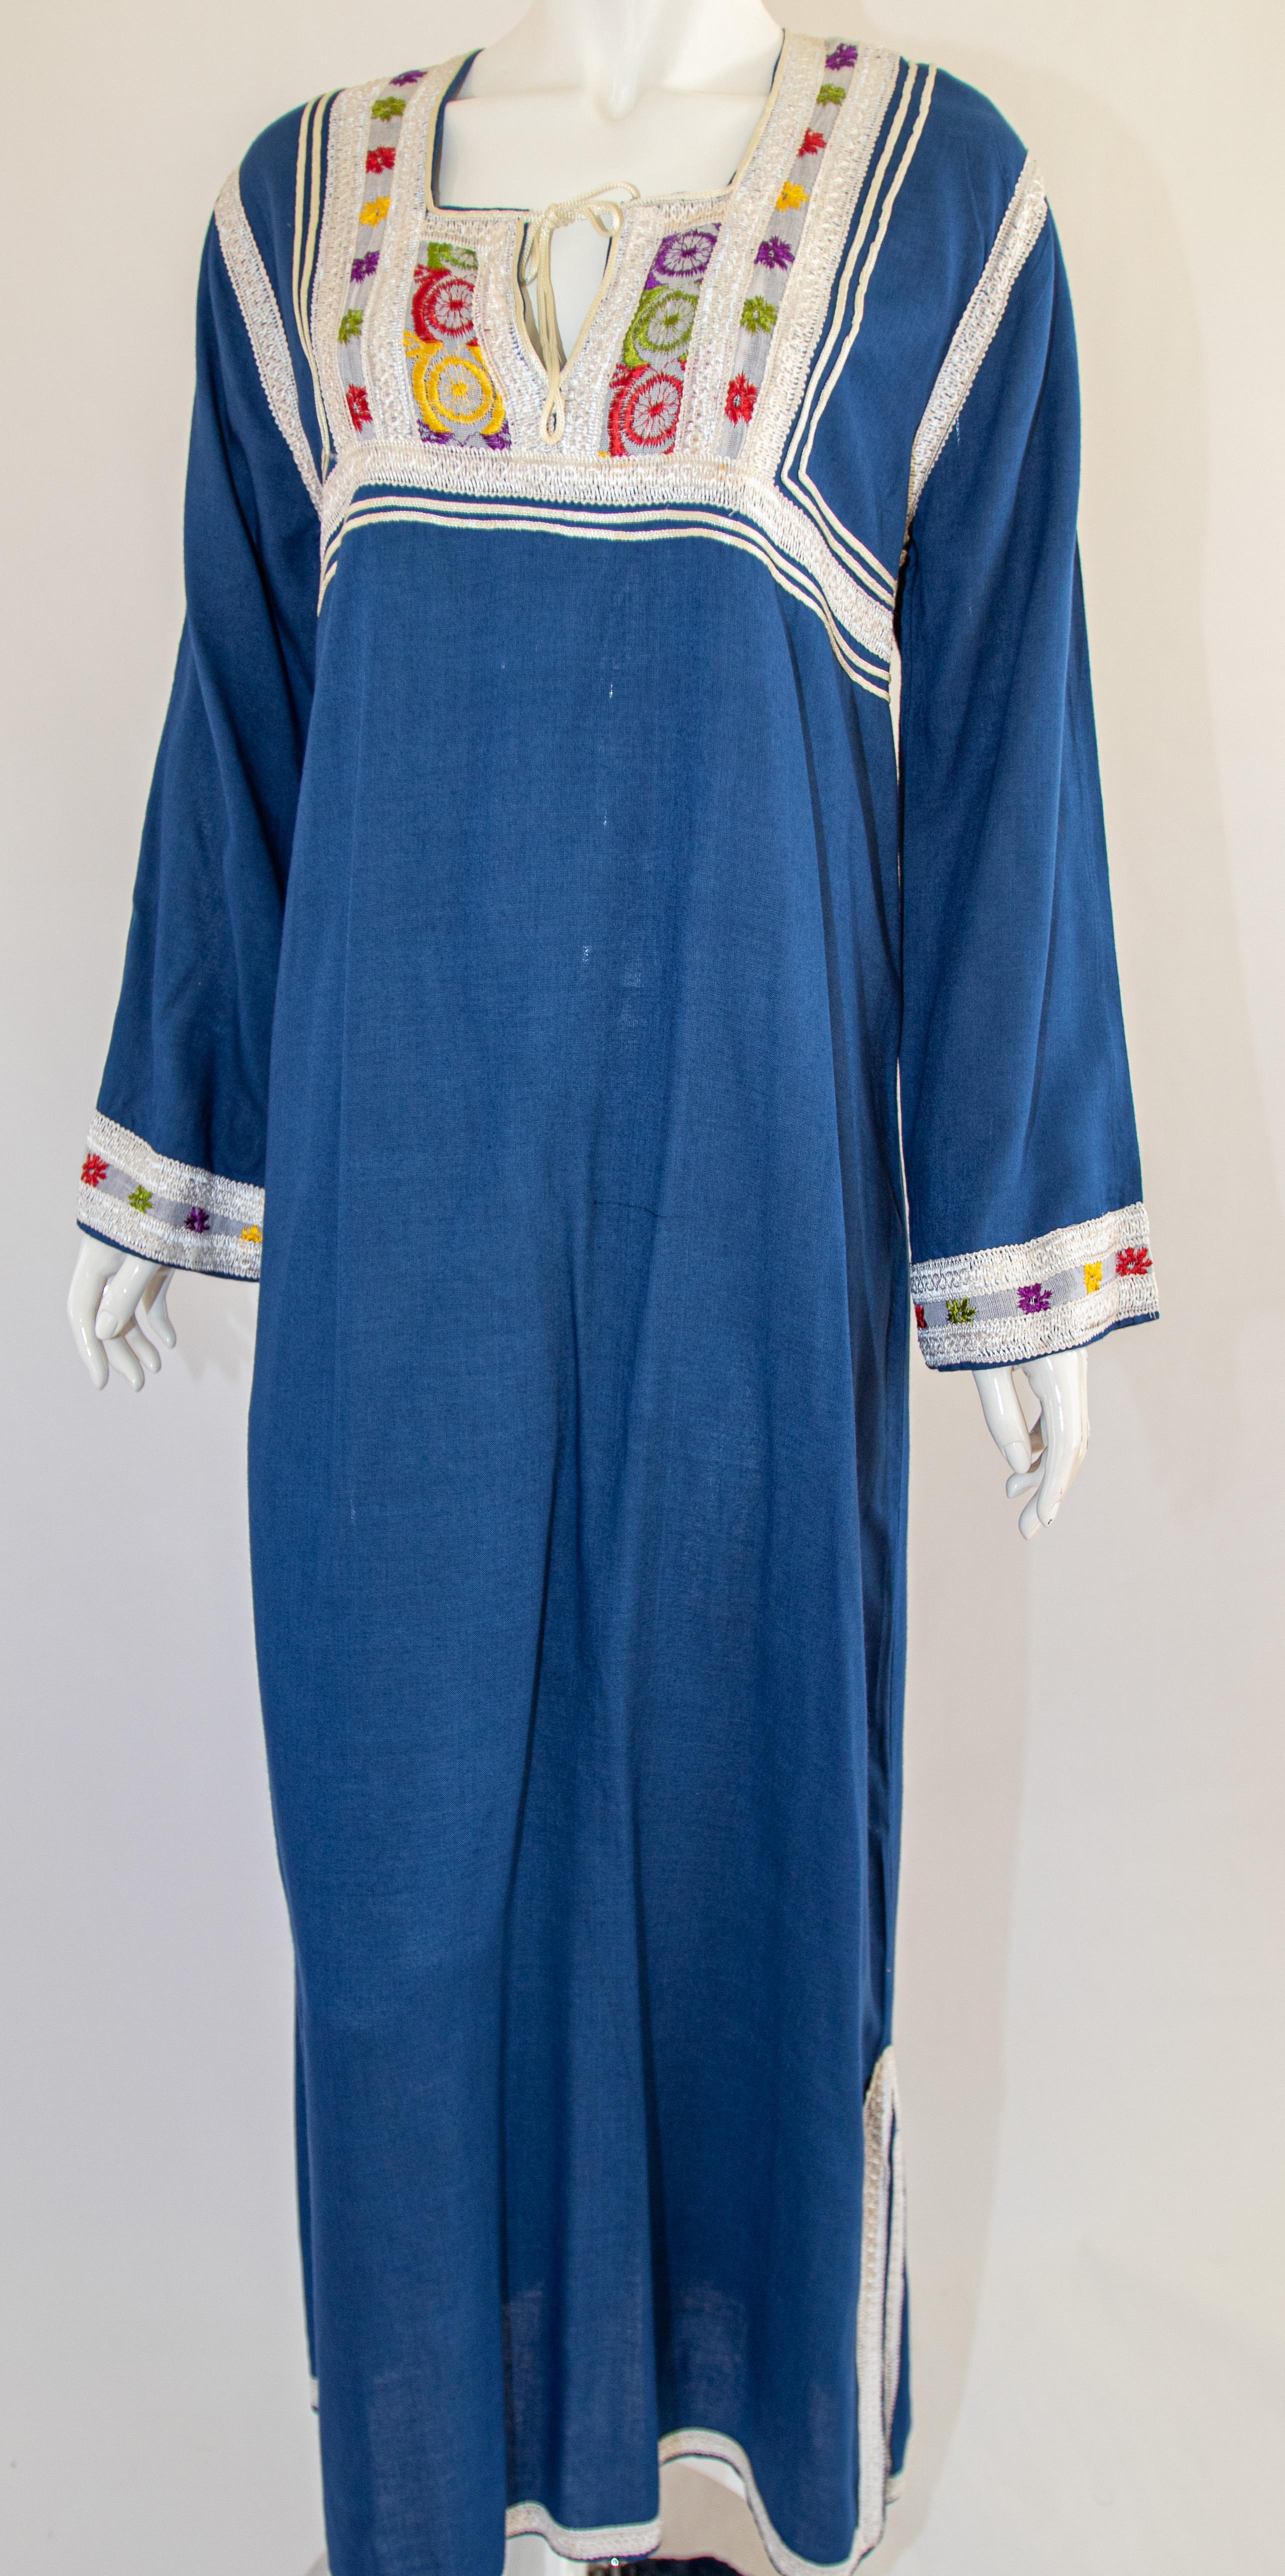 Moroccan Vintage Blue Caftan, 1970 Maxi Dress Kaftan by Glenn Boston Size M For Sale 6